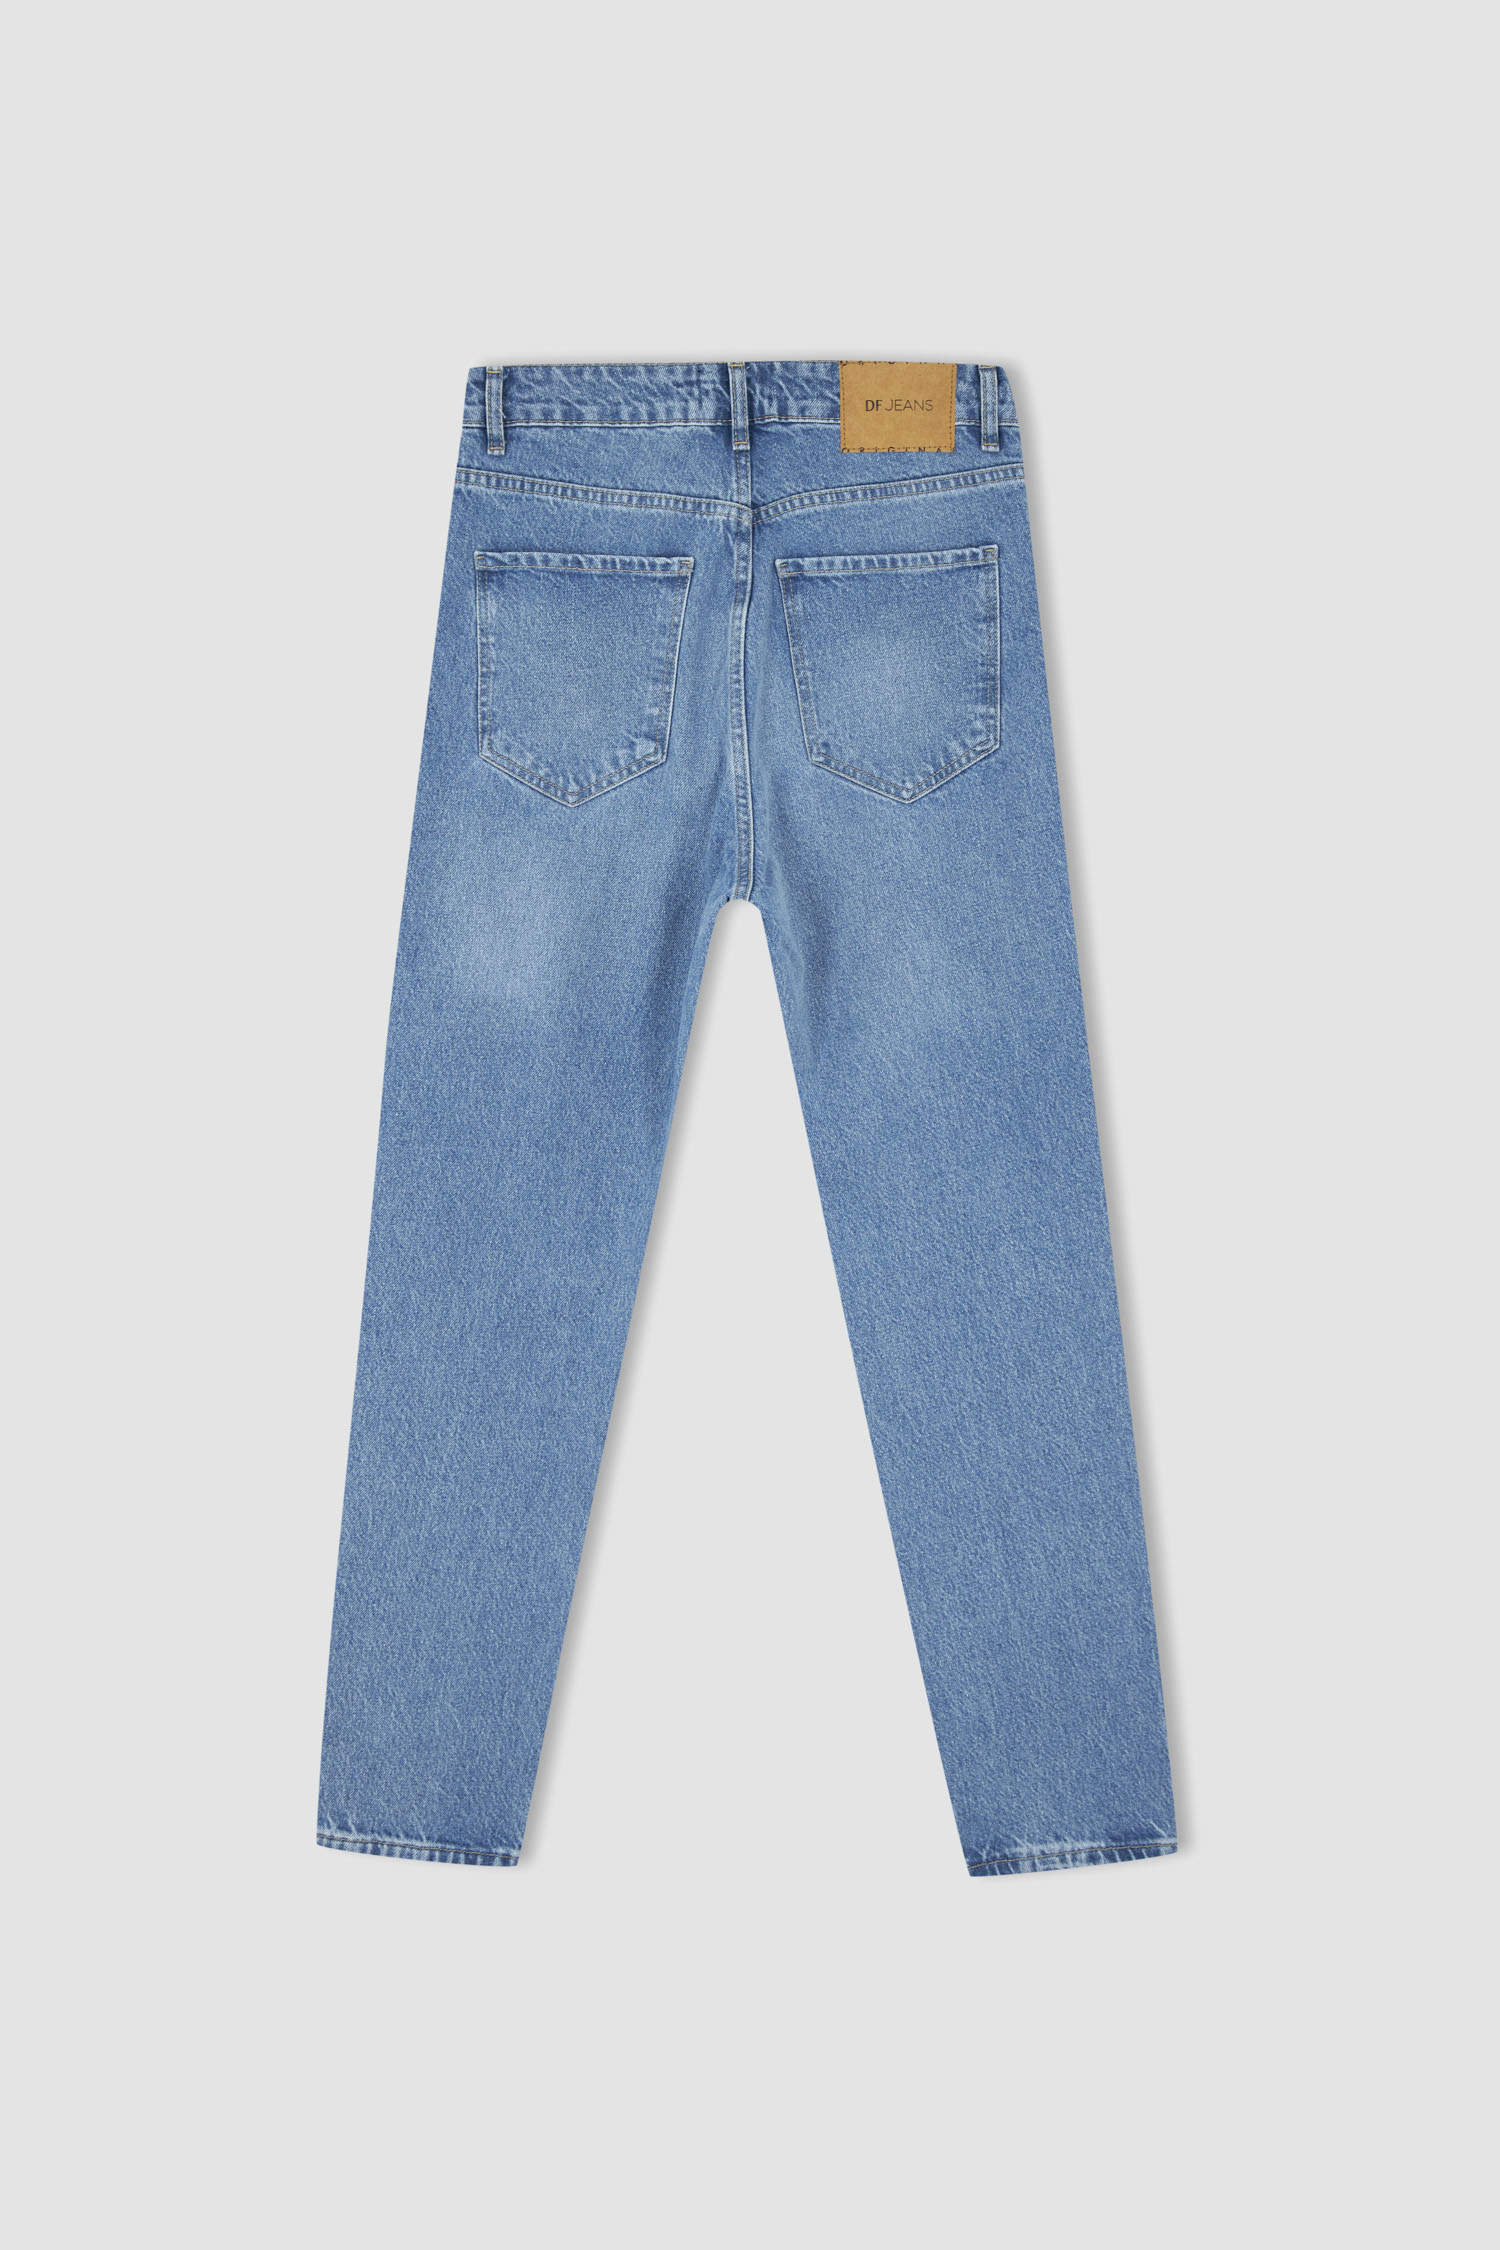 Defacto 90's Slim Fit Nomal Bel Sürdürülebilir Jean pantolon. 9